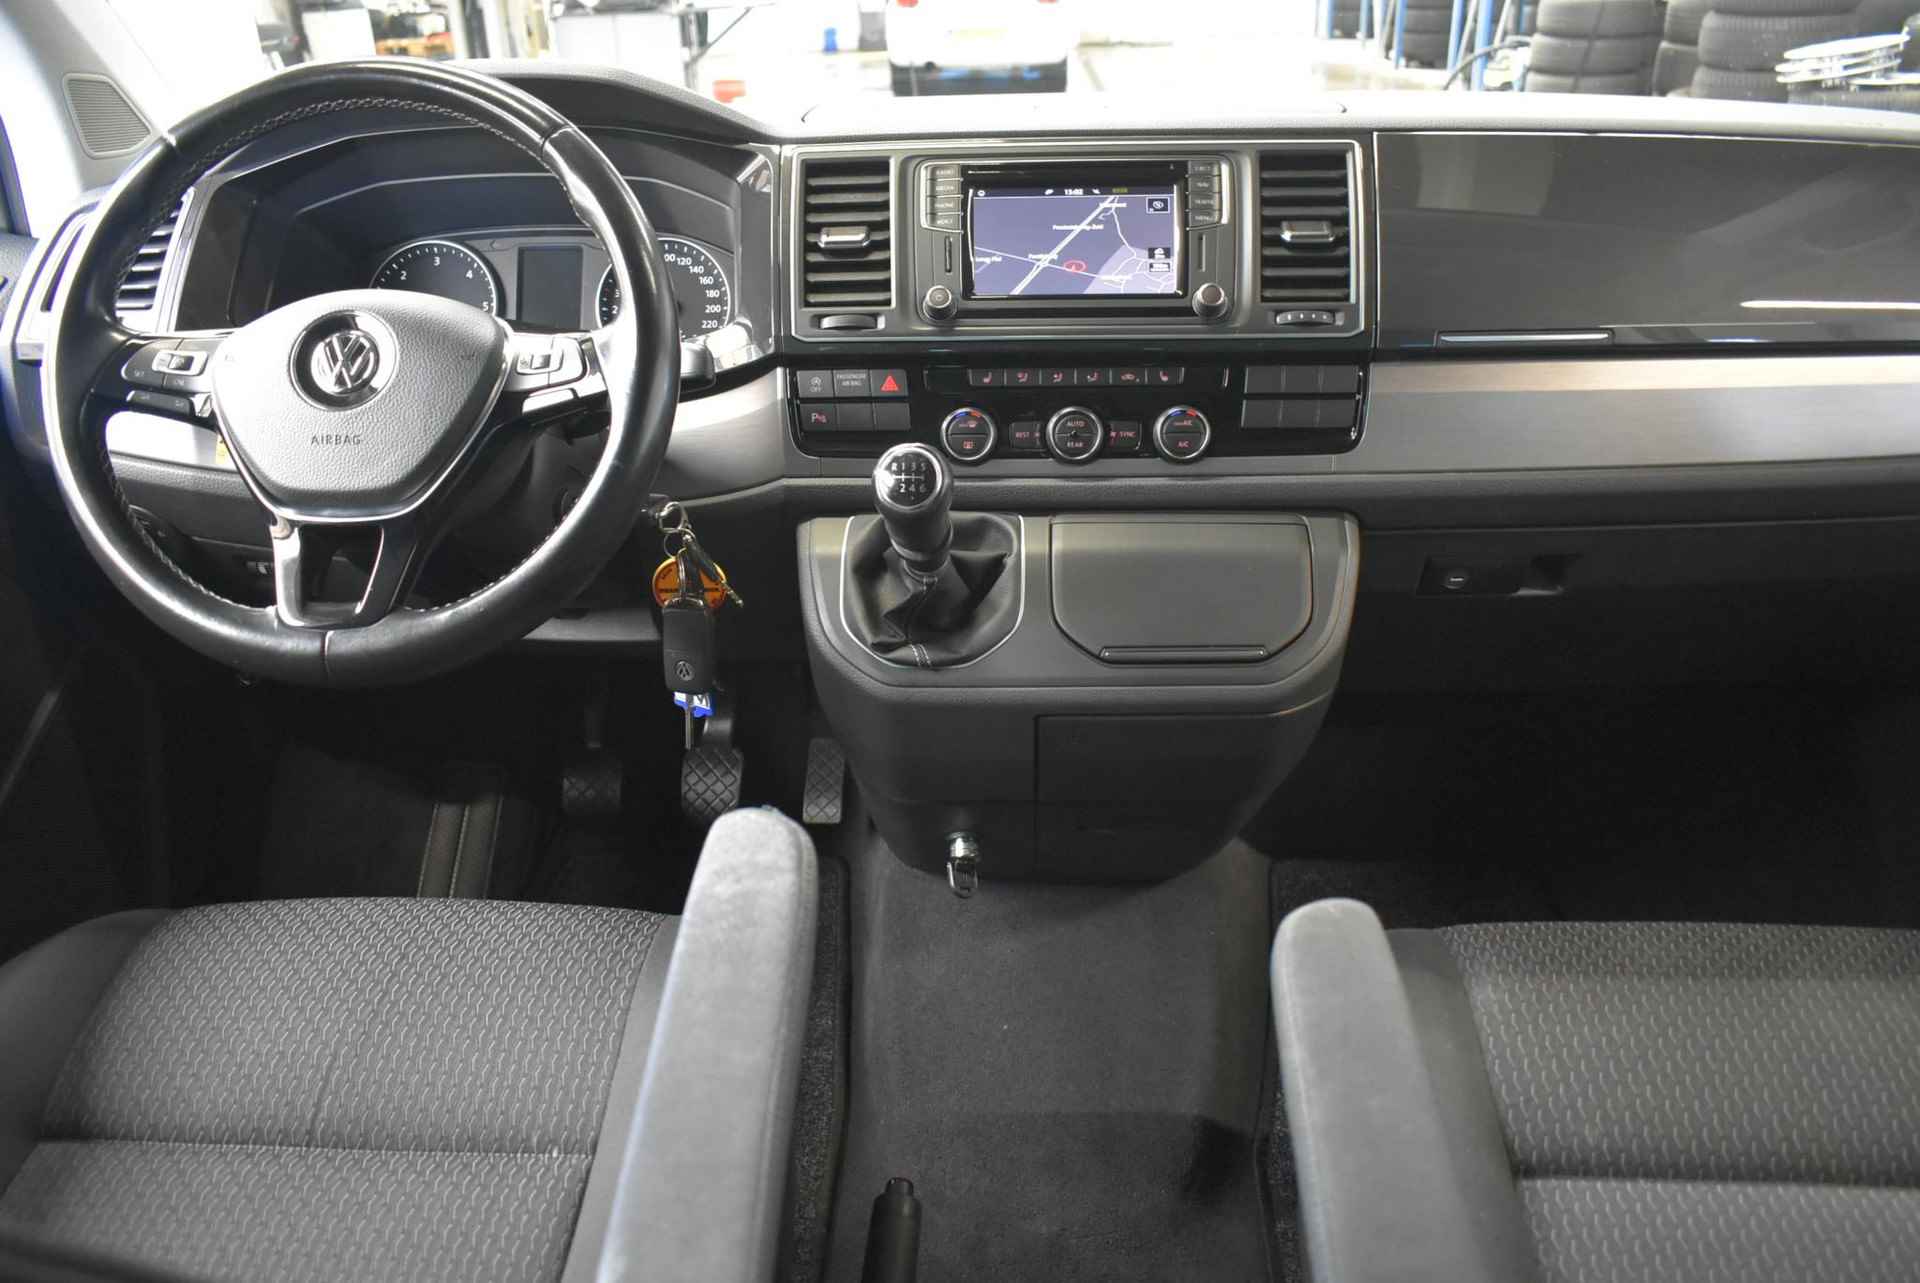 Volkswagen T6 California Beach Edition 150pk H6 Camper LED koplampen, 17" LMV, 5 zits, hef dak, navigatie, climatronic, stoelverw, boven en onder slapen, afn trekhaak, draaibare voorstoelen, armleuningen, lendesteun, multifunctioneel lederen stuurwiel, cruise control, pdc parkeersensoren voor en achter, privacy glas extra getint vanaf de b stijl, klap tafel, mistlampen voor bumpers in kleur, goed onderhouden camper in goede staat, opberg tassen, opberg kast, opbergruimte onder verschuifbare achterbank met 3 zitplaatsen en 3 3-punts gordels. - 3/37